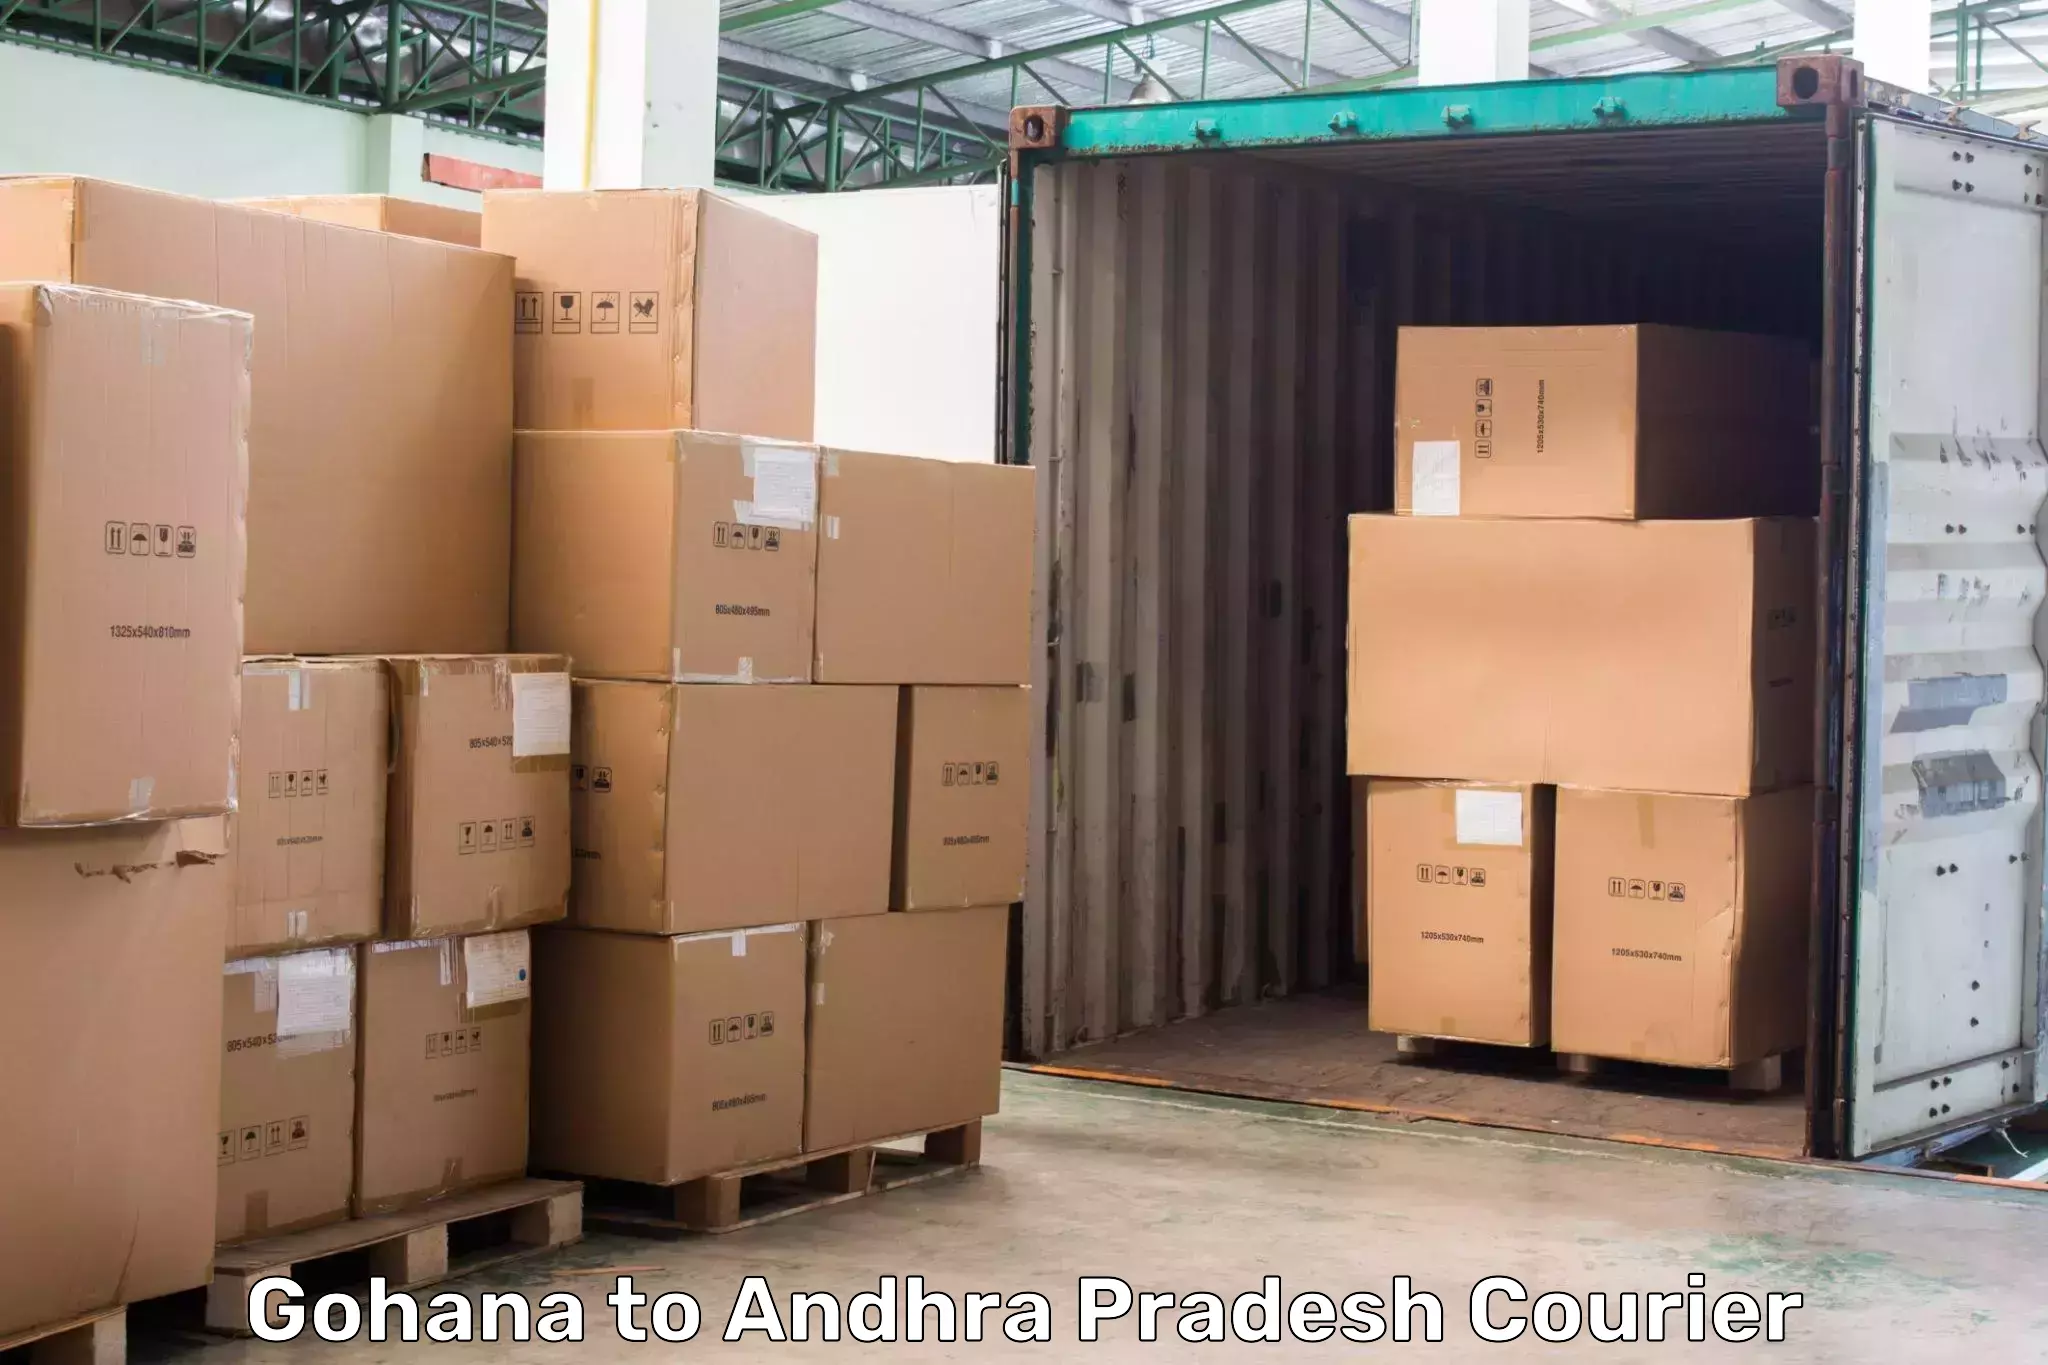 24-hour delivery options Gohana to Yerragondapalem